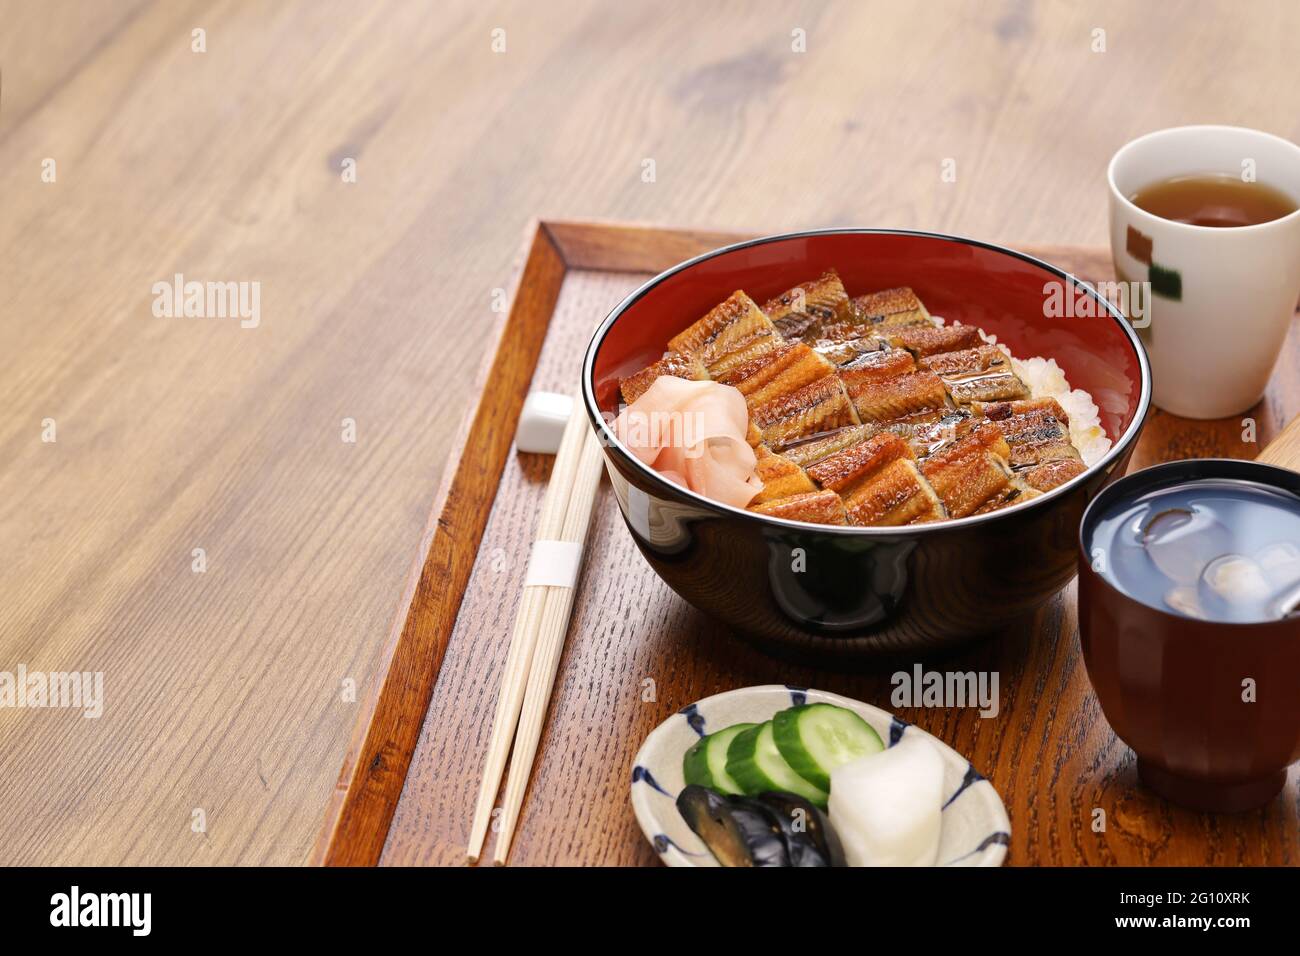 Anagodon, ciotola di riso con anguilla alla griglia, cibo giapponese Foto  stock - Alamy